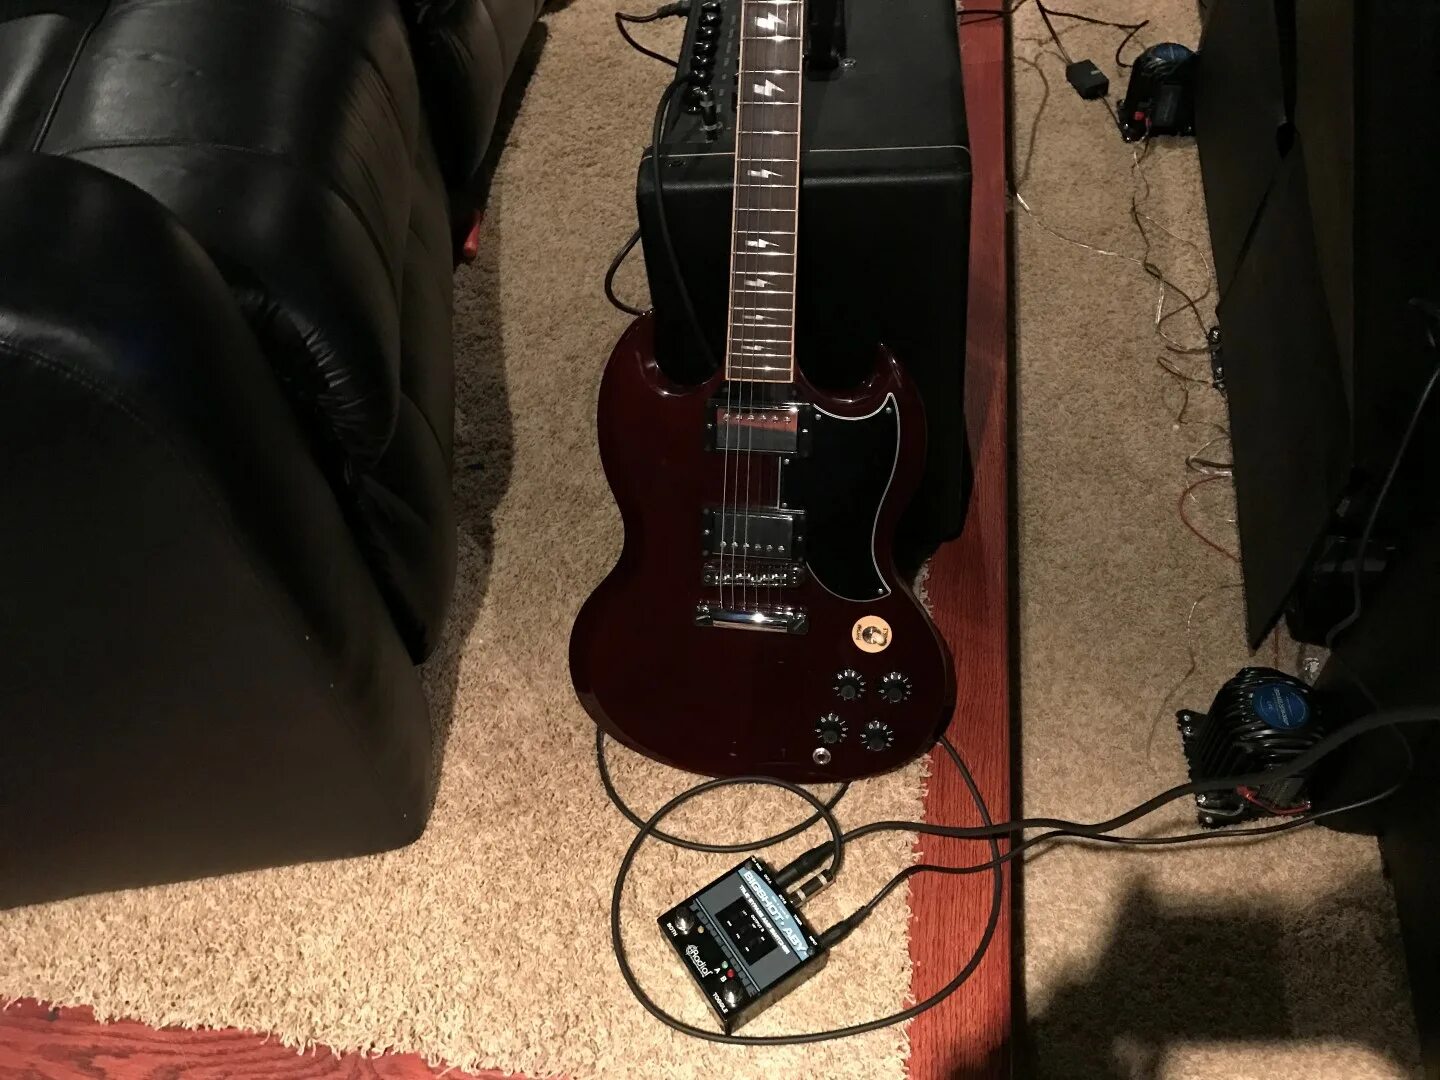 Rocksmith 2014 Cable. Rocksmith 2014 кабель. Подключенная гитара. Гитара подключенная к комбику.